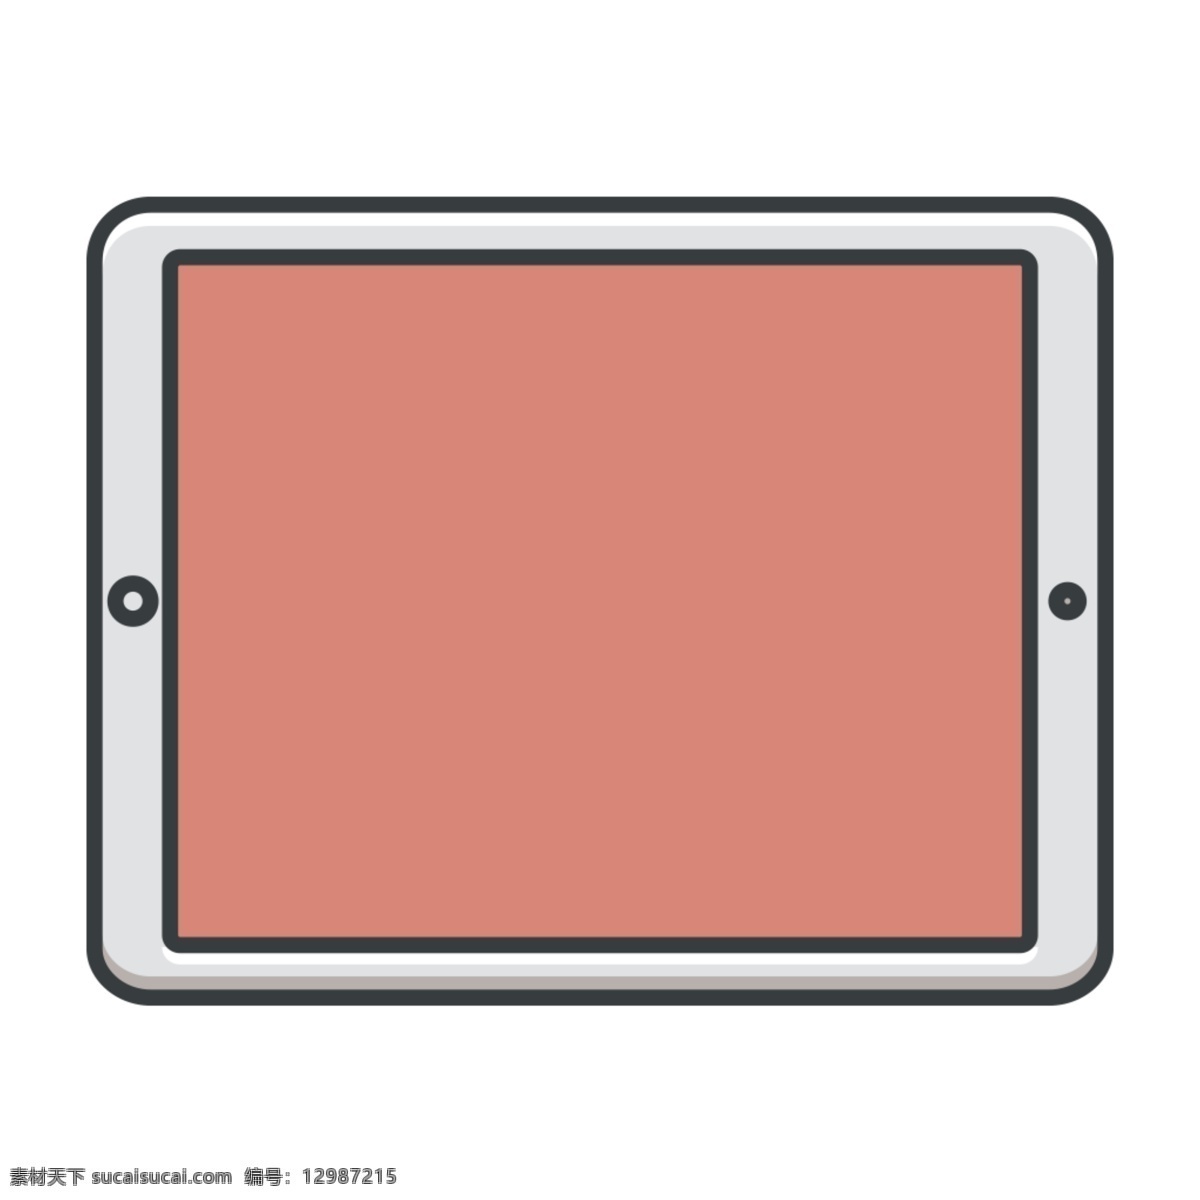 网页 uiipad 模型 图标 图标设计 icon icon设计 icon图标 网页图标 ipad图标 ipad设计 ipad模型 ipad